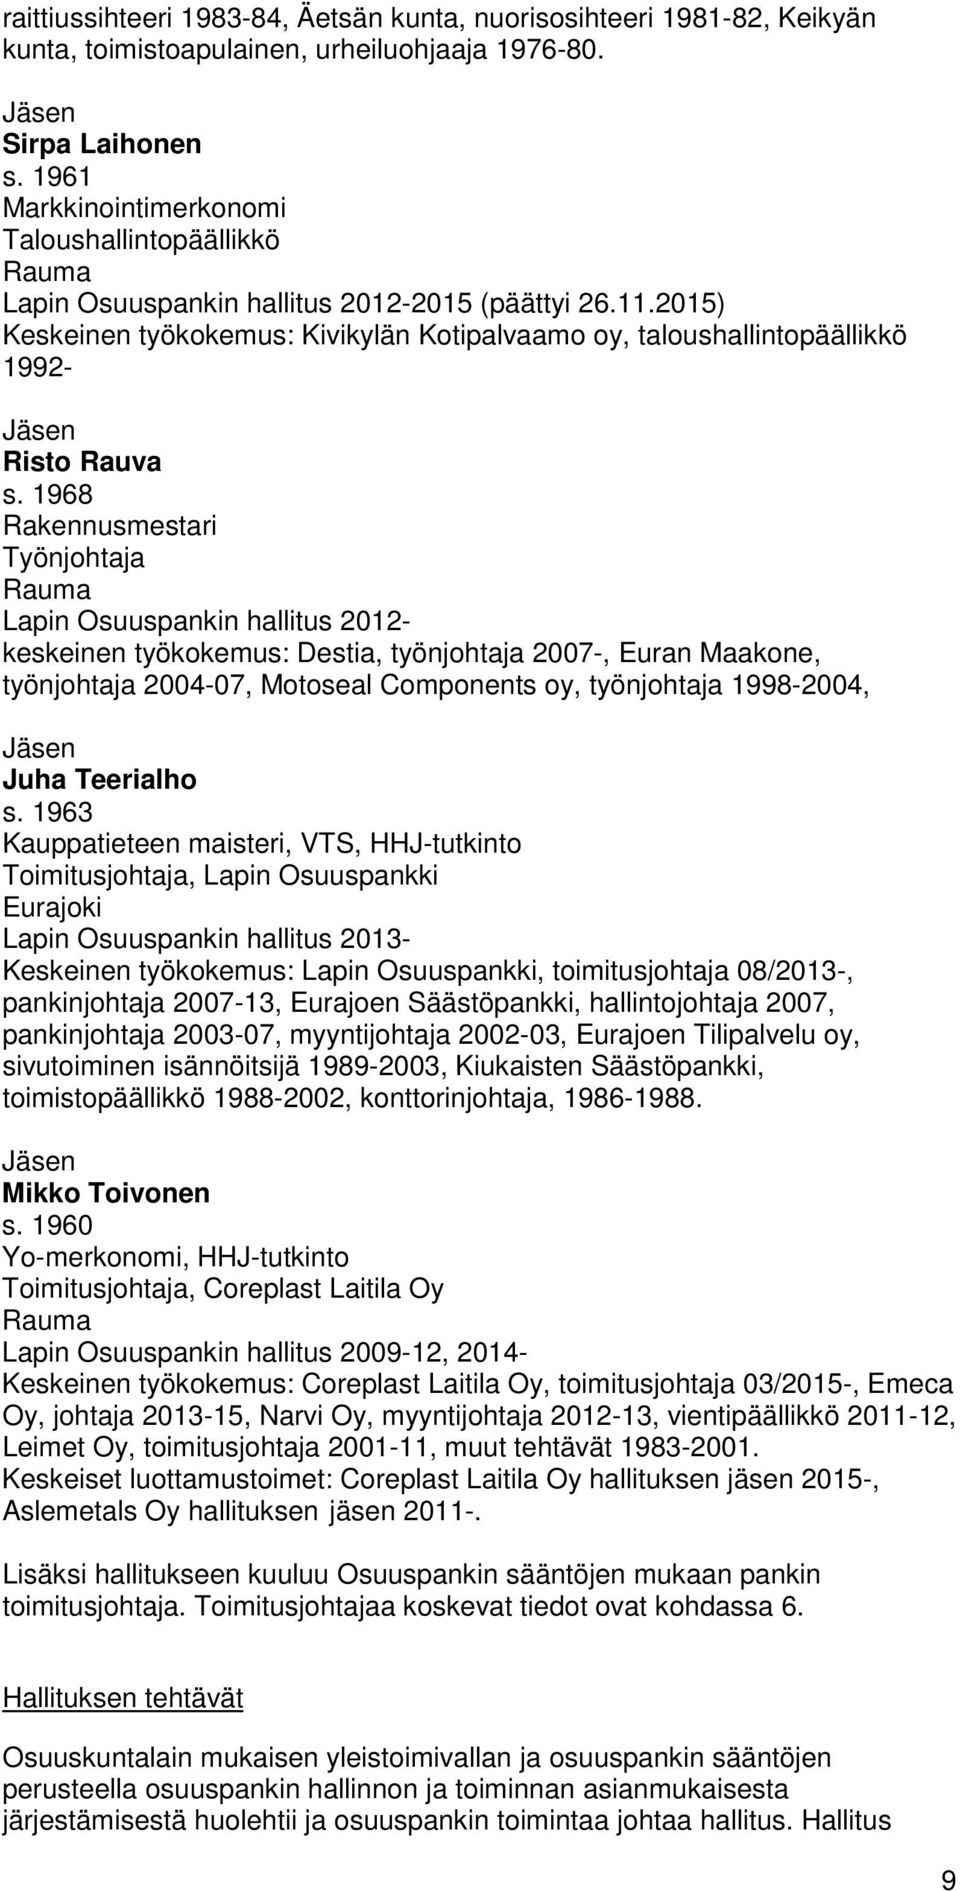 2015) Keskeinen työkokemus: Kivikylän Kotipalvaamo oy, taloushallintopäällikkö 1992- Jäsen Risto Rauva s.